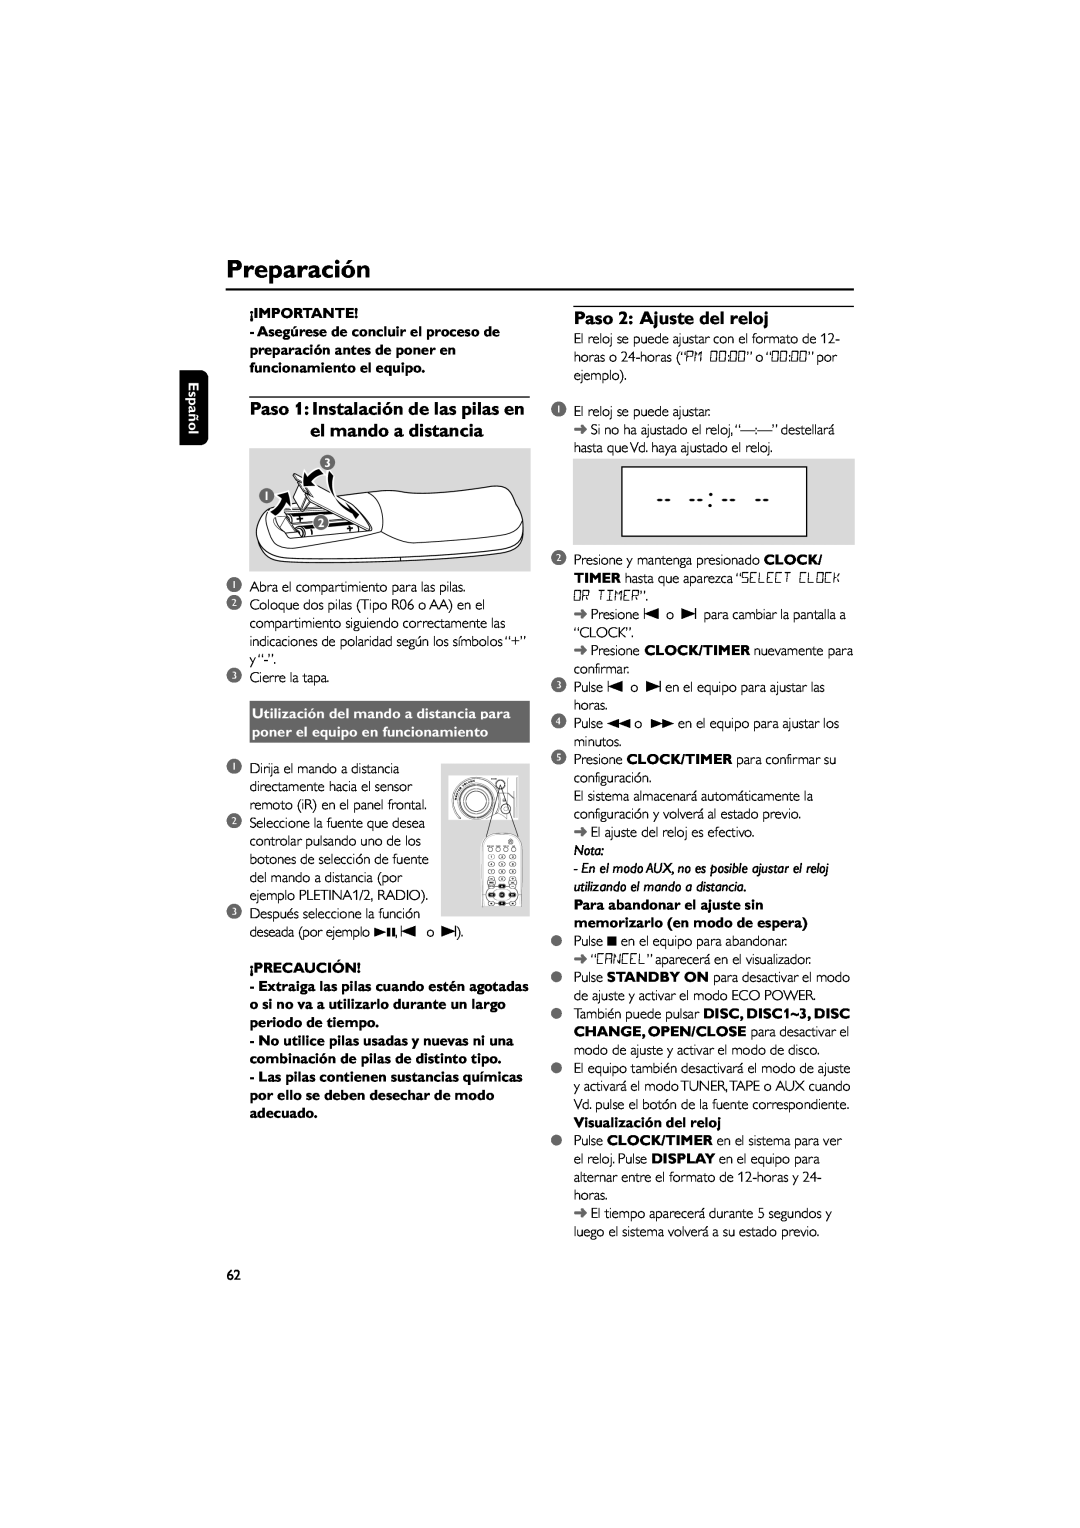 Philips FWD792 Preparación, Paso 2 Ajuste del reloj, Utilización del mando a distancia para, ¡Precaución, Español 